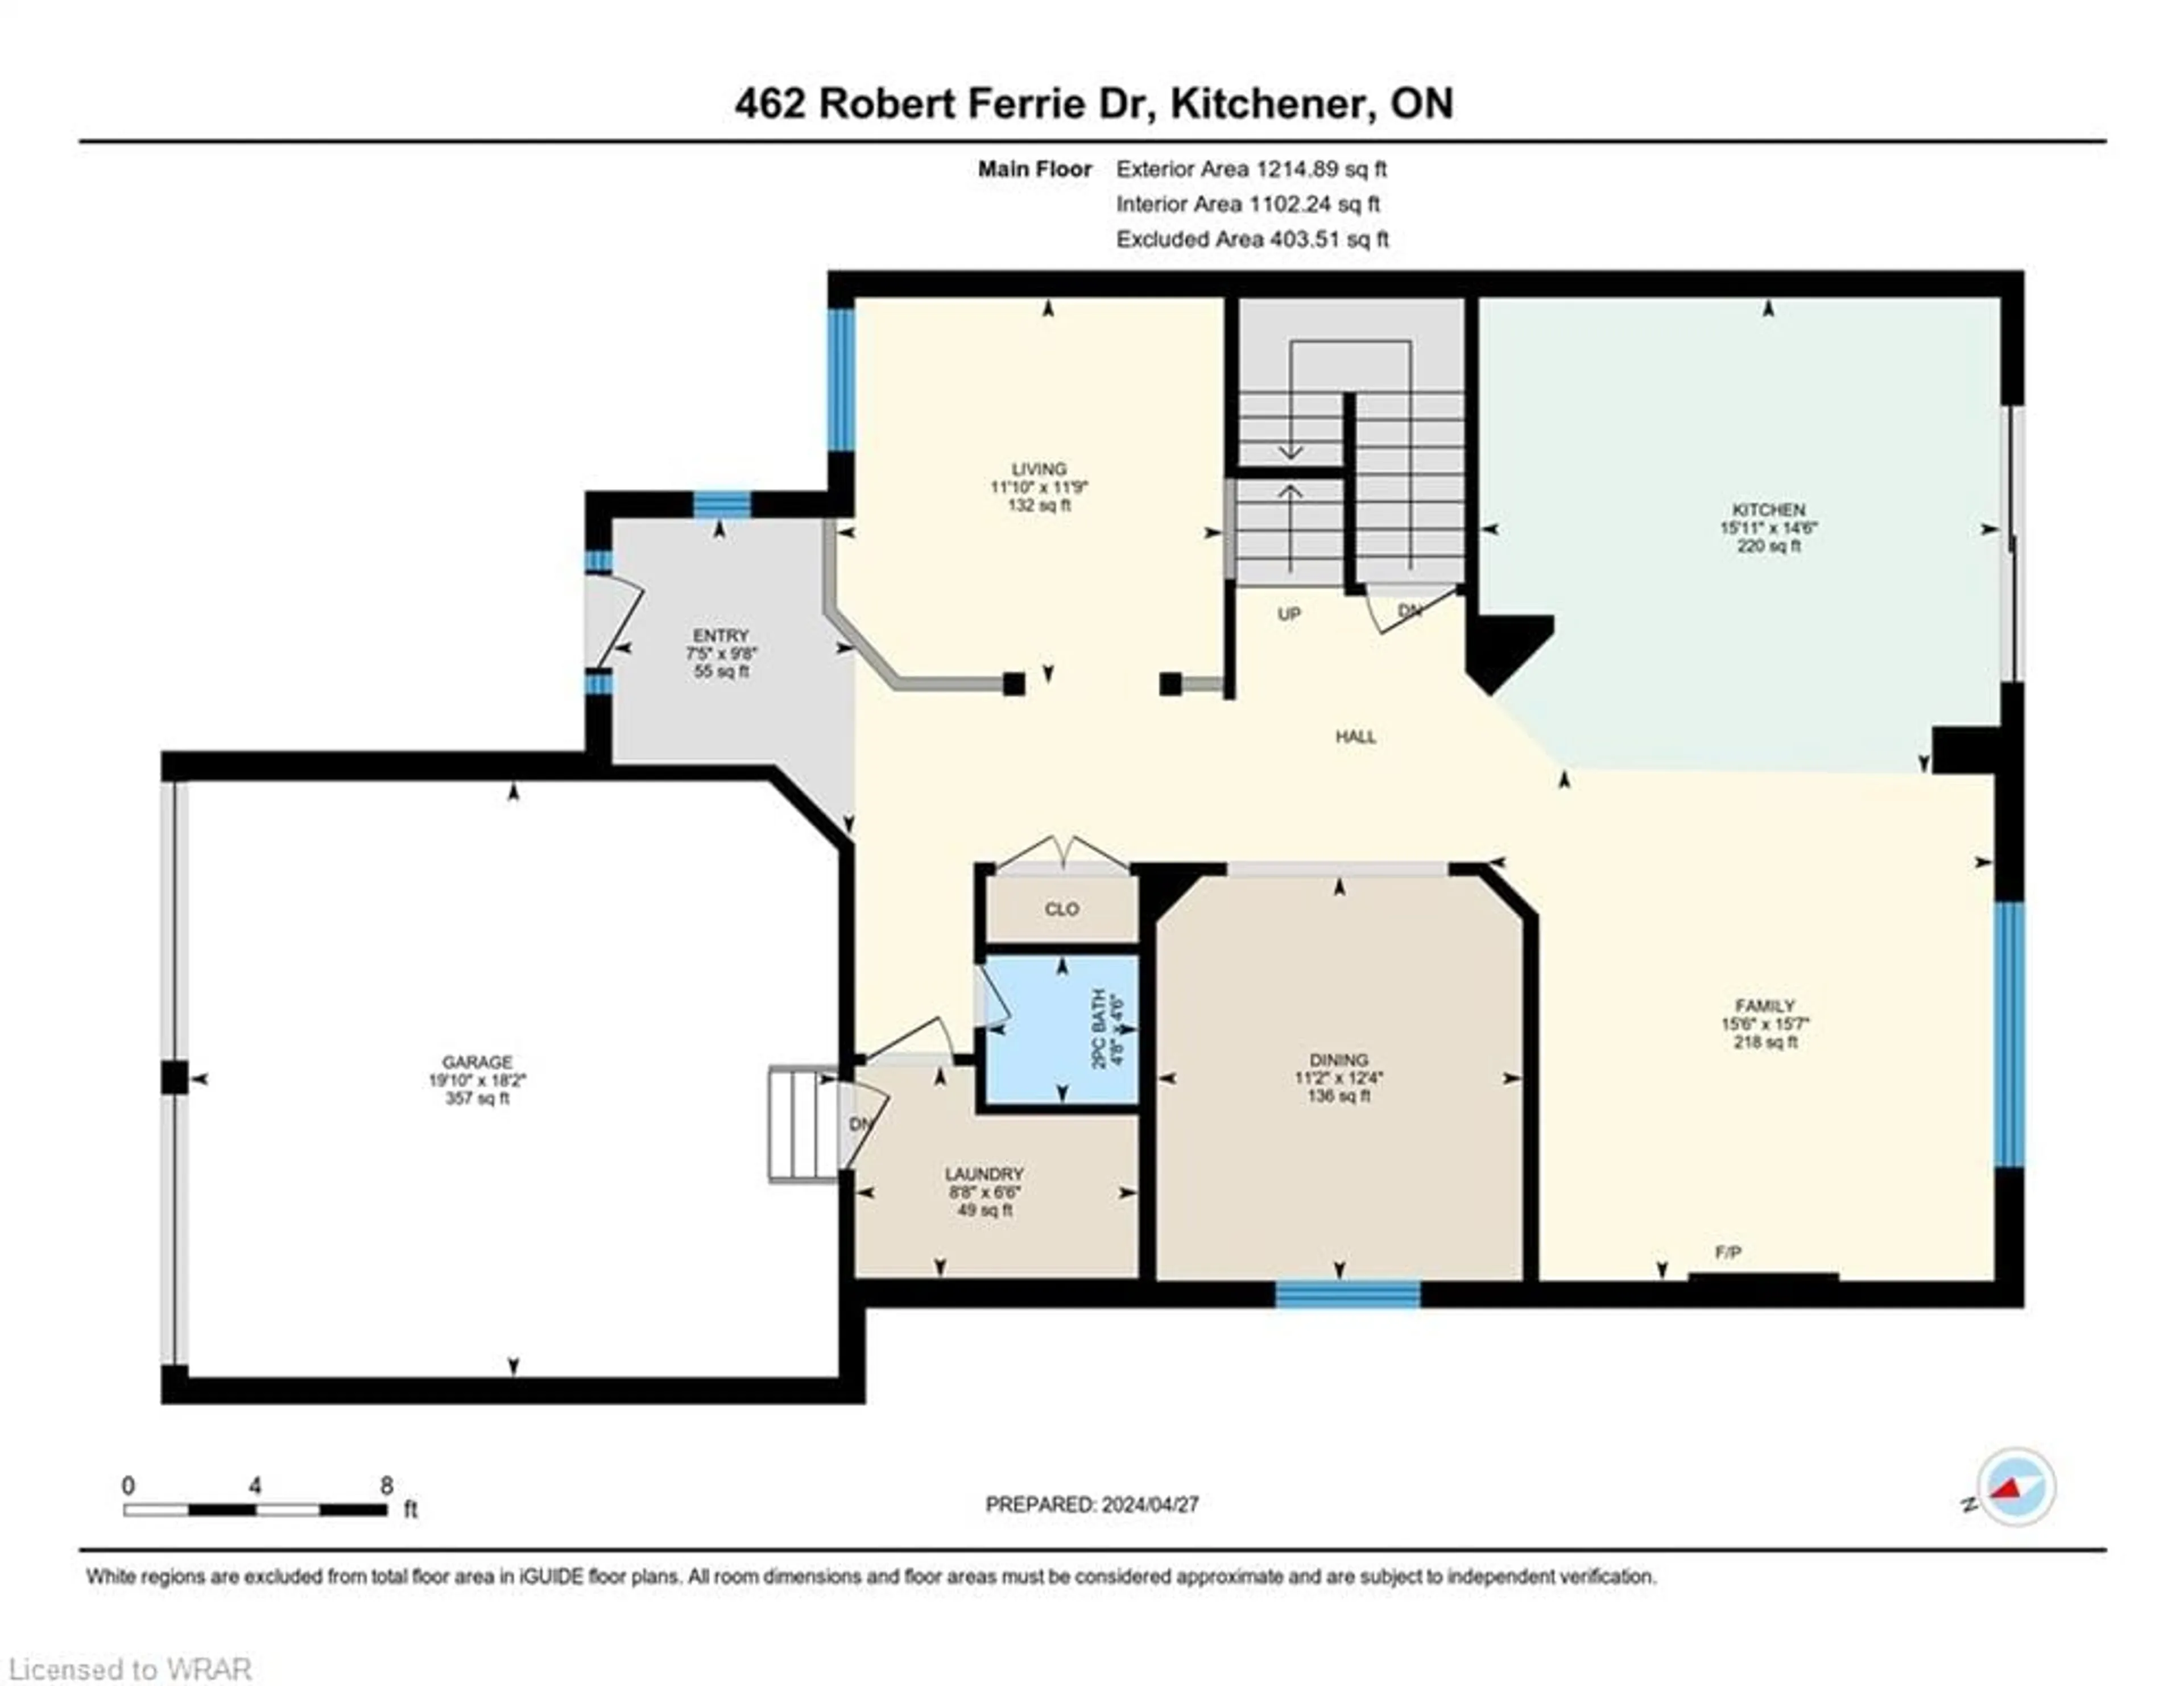 Floor plan for 462 Robert Ferrie Dr, Kitchener Ontario N2P 2Y4